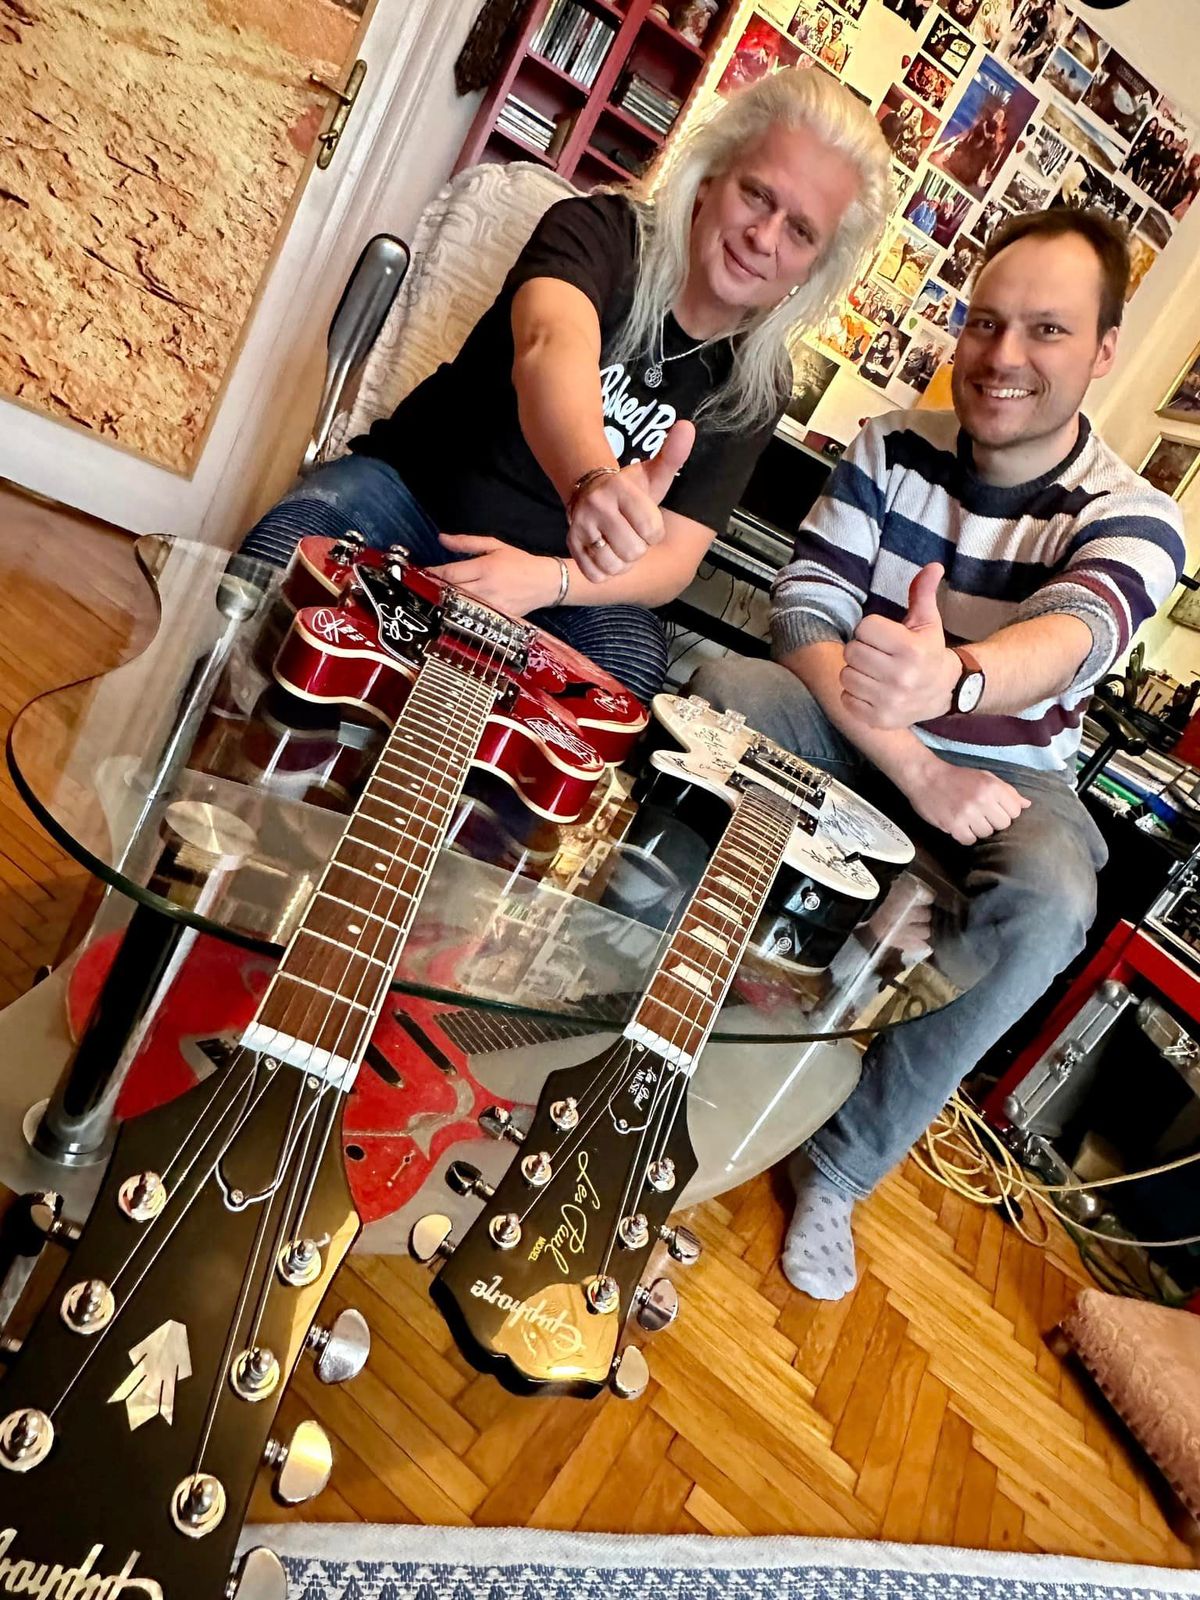 Két fantasztikus gitárt írtak alá a hazai művészek - köztük Alapi István - a jó cél érdekében